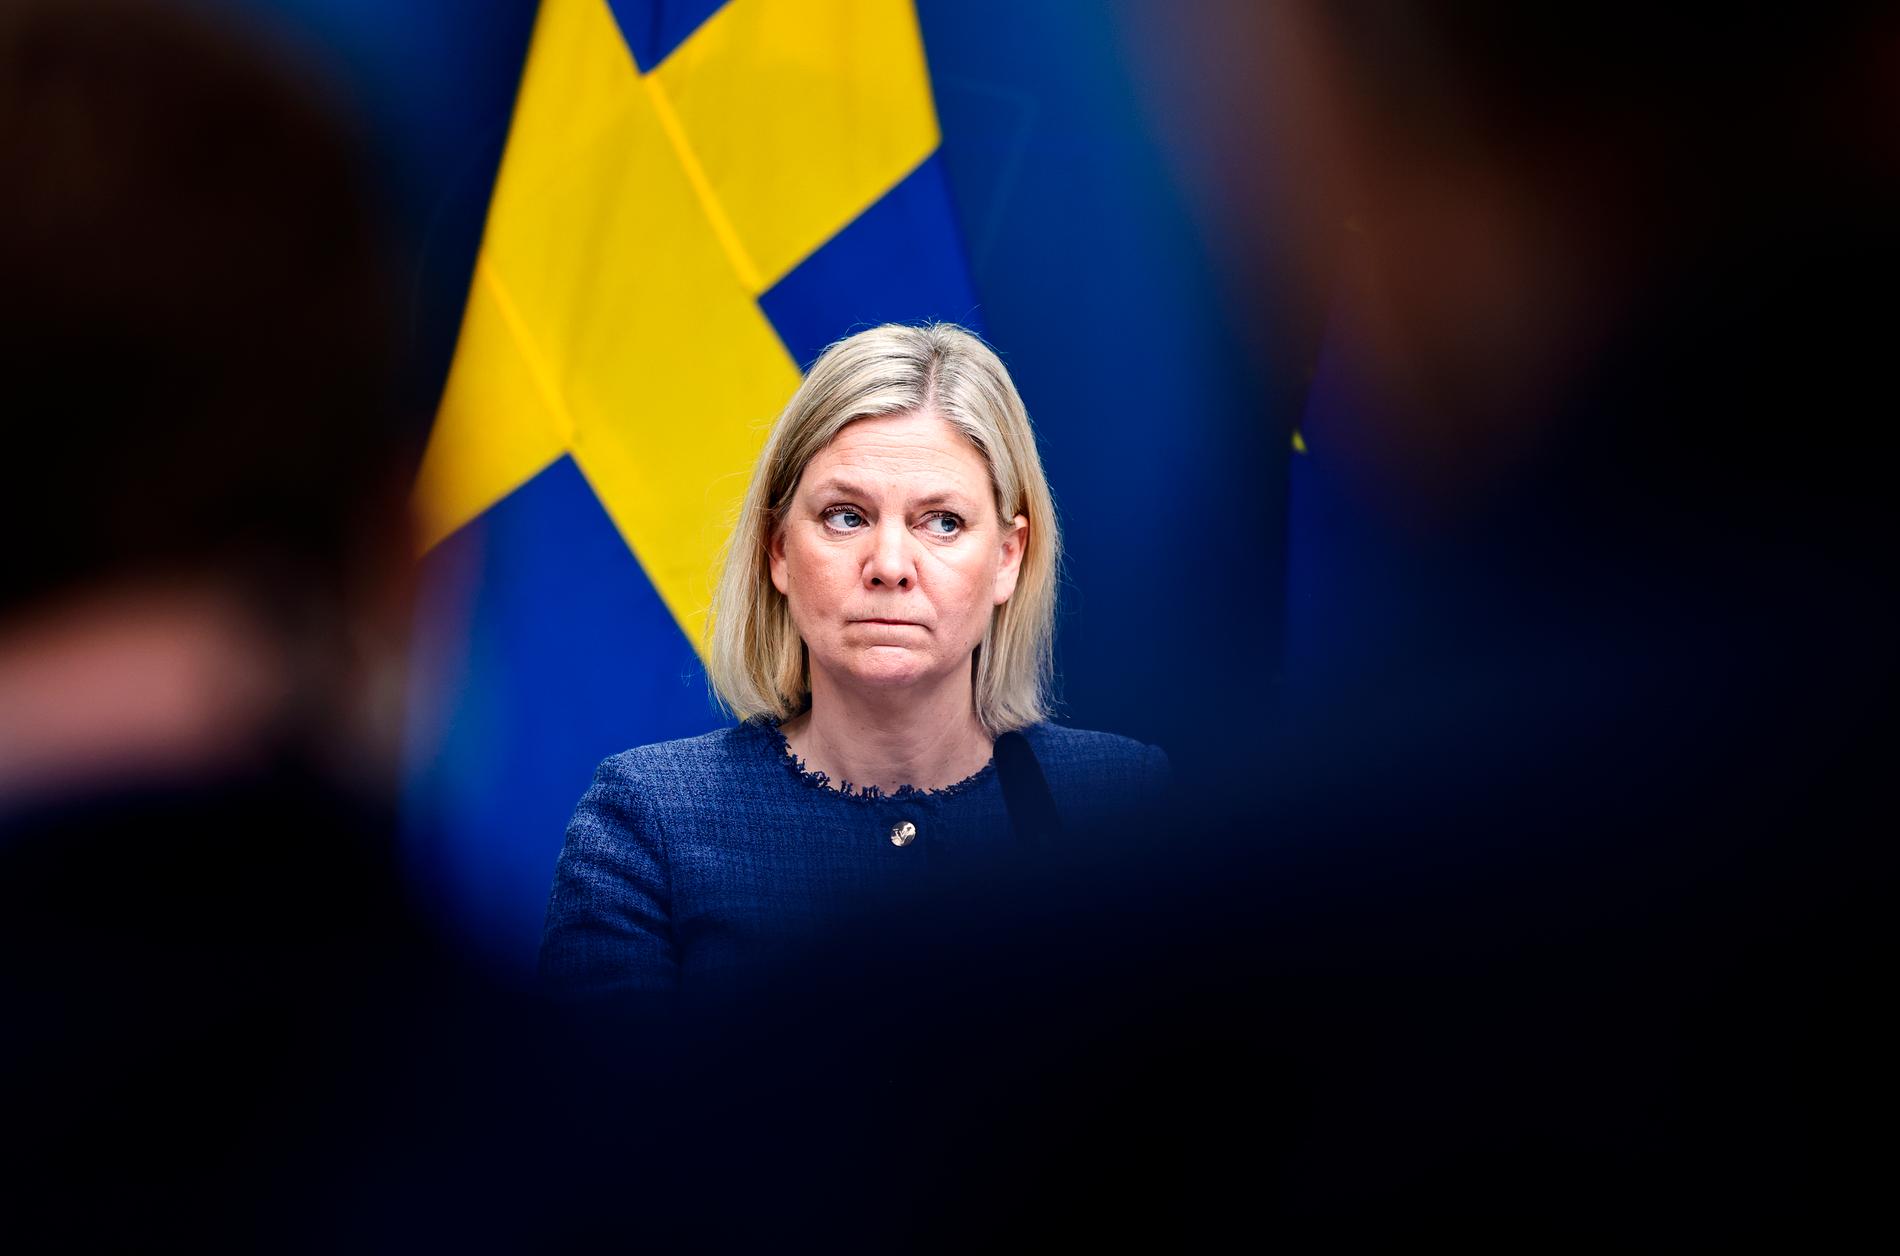 En lokalvårdare som befann sig illegalt i Sverige greps hemma hos statsminister Magdalena Andersson.